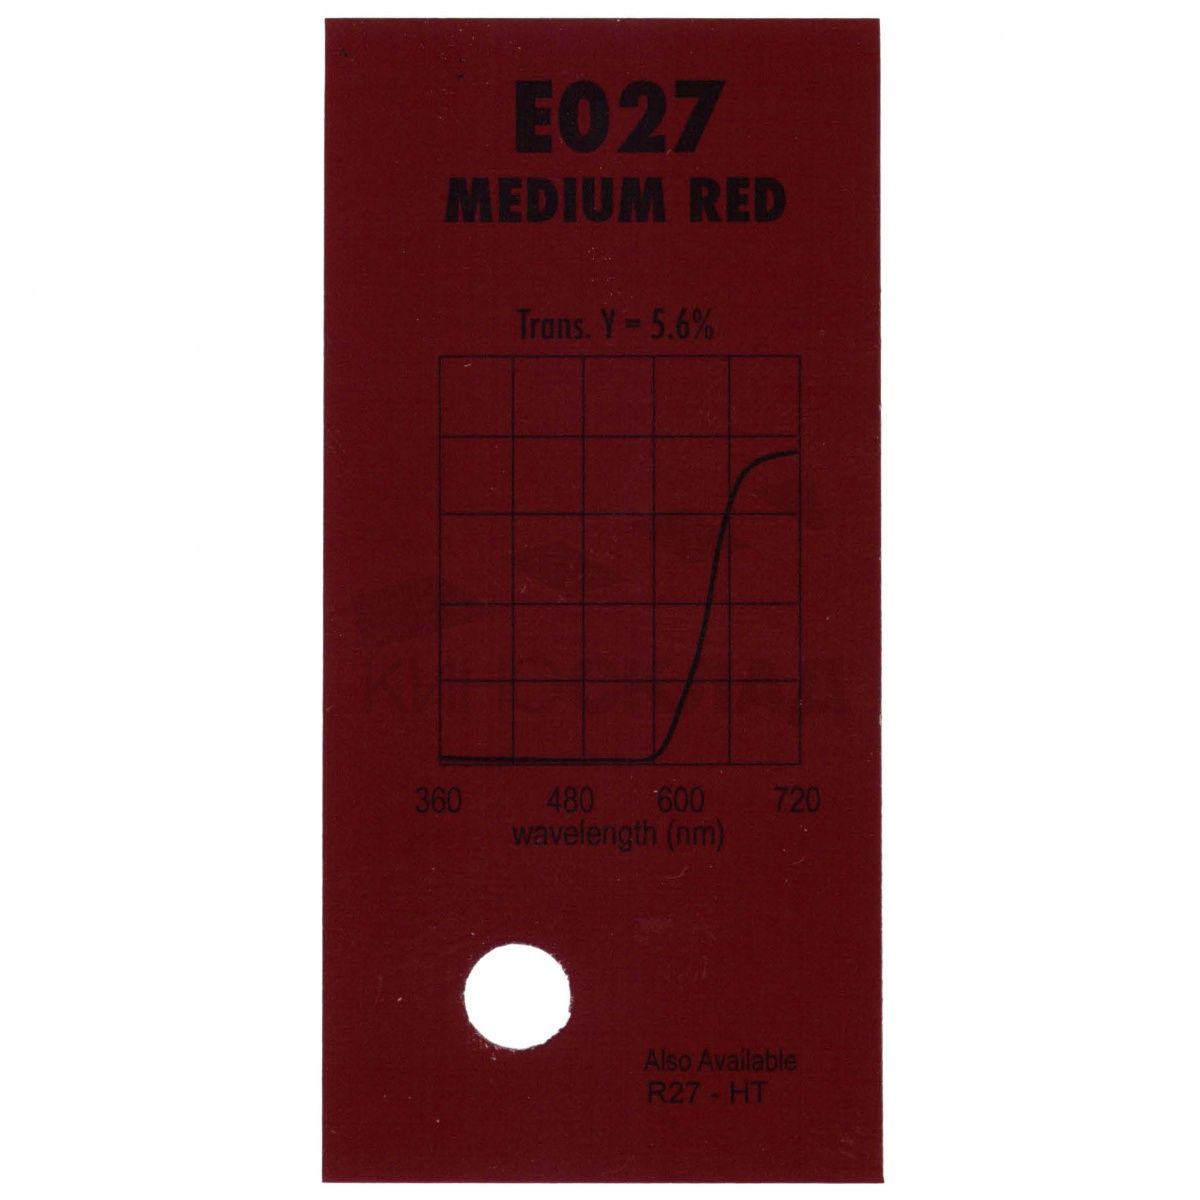 LEE Filters # 027 Medium Red